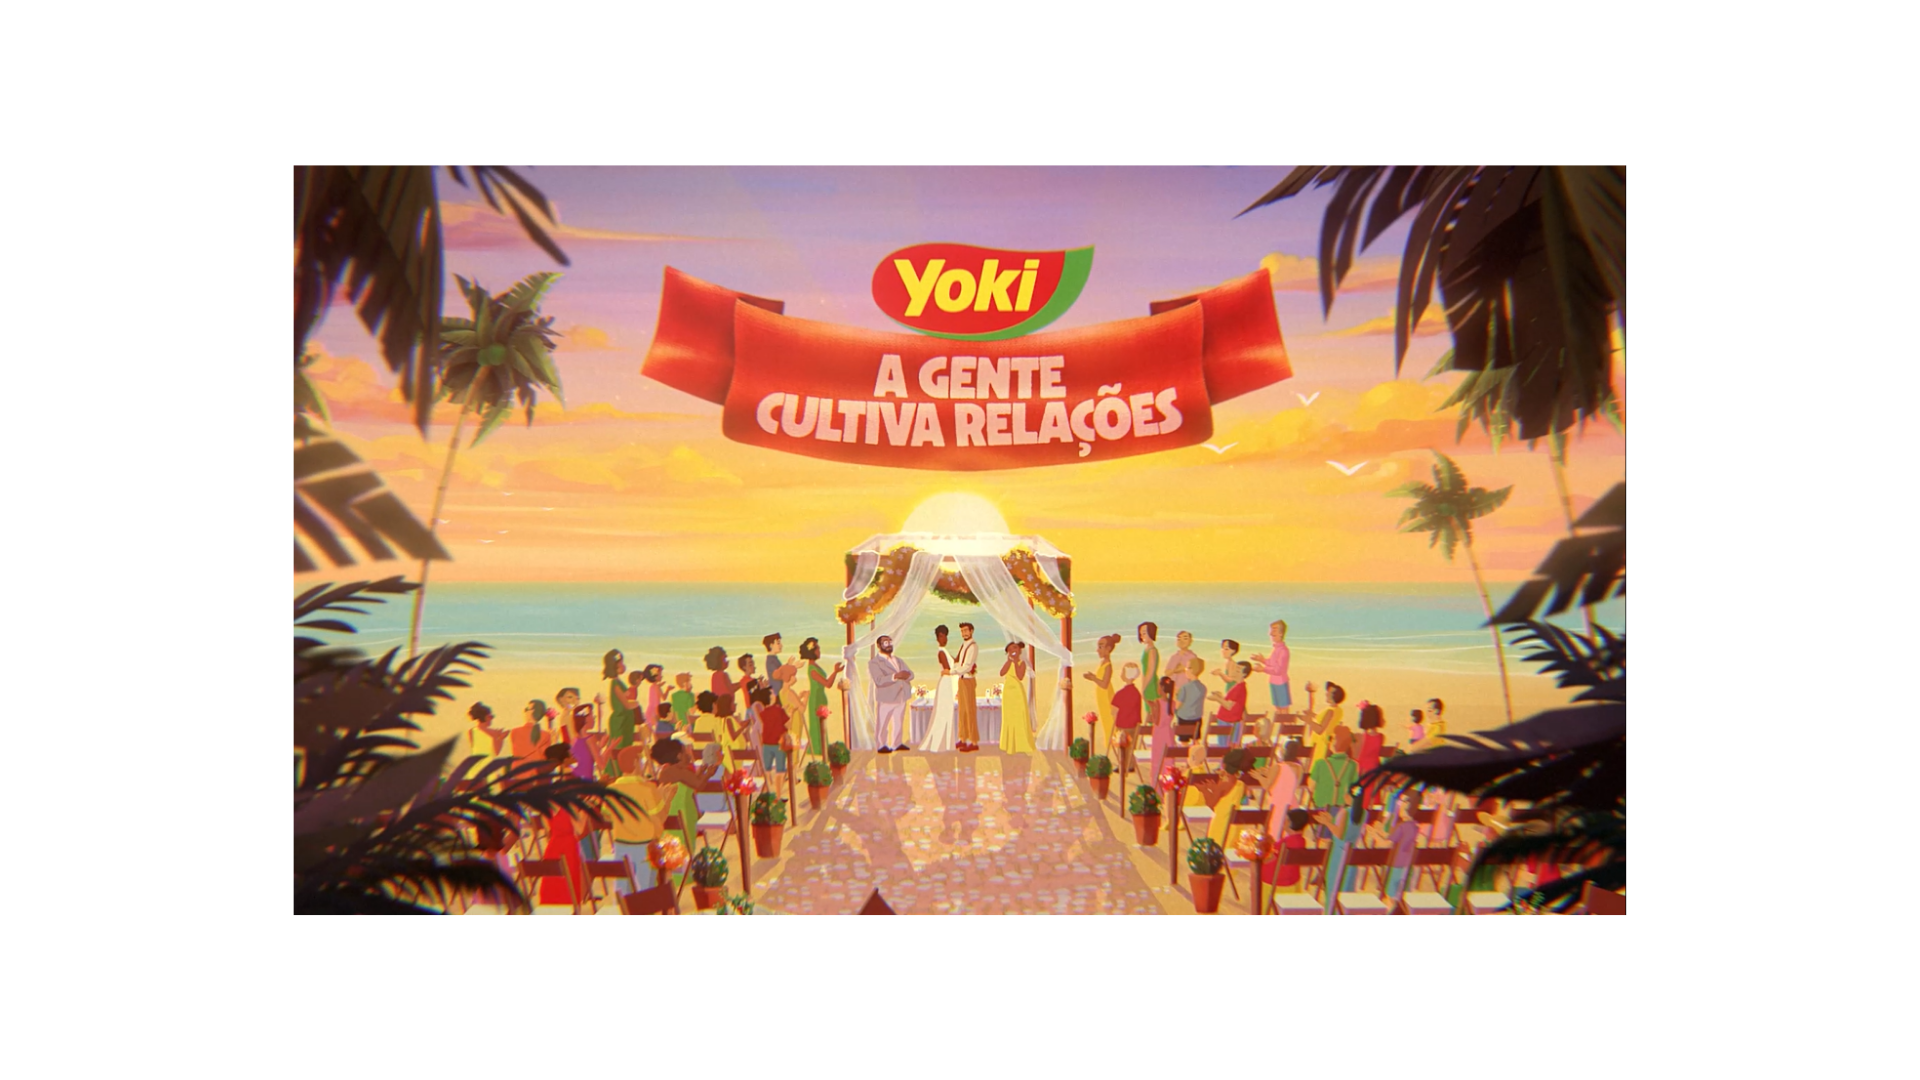 Featured image for “Yoki mostra como boas companhias e comida gostosa conectam as pessoas”